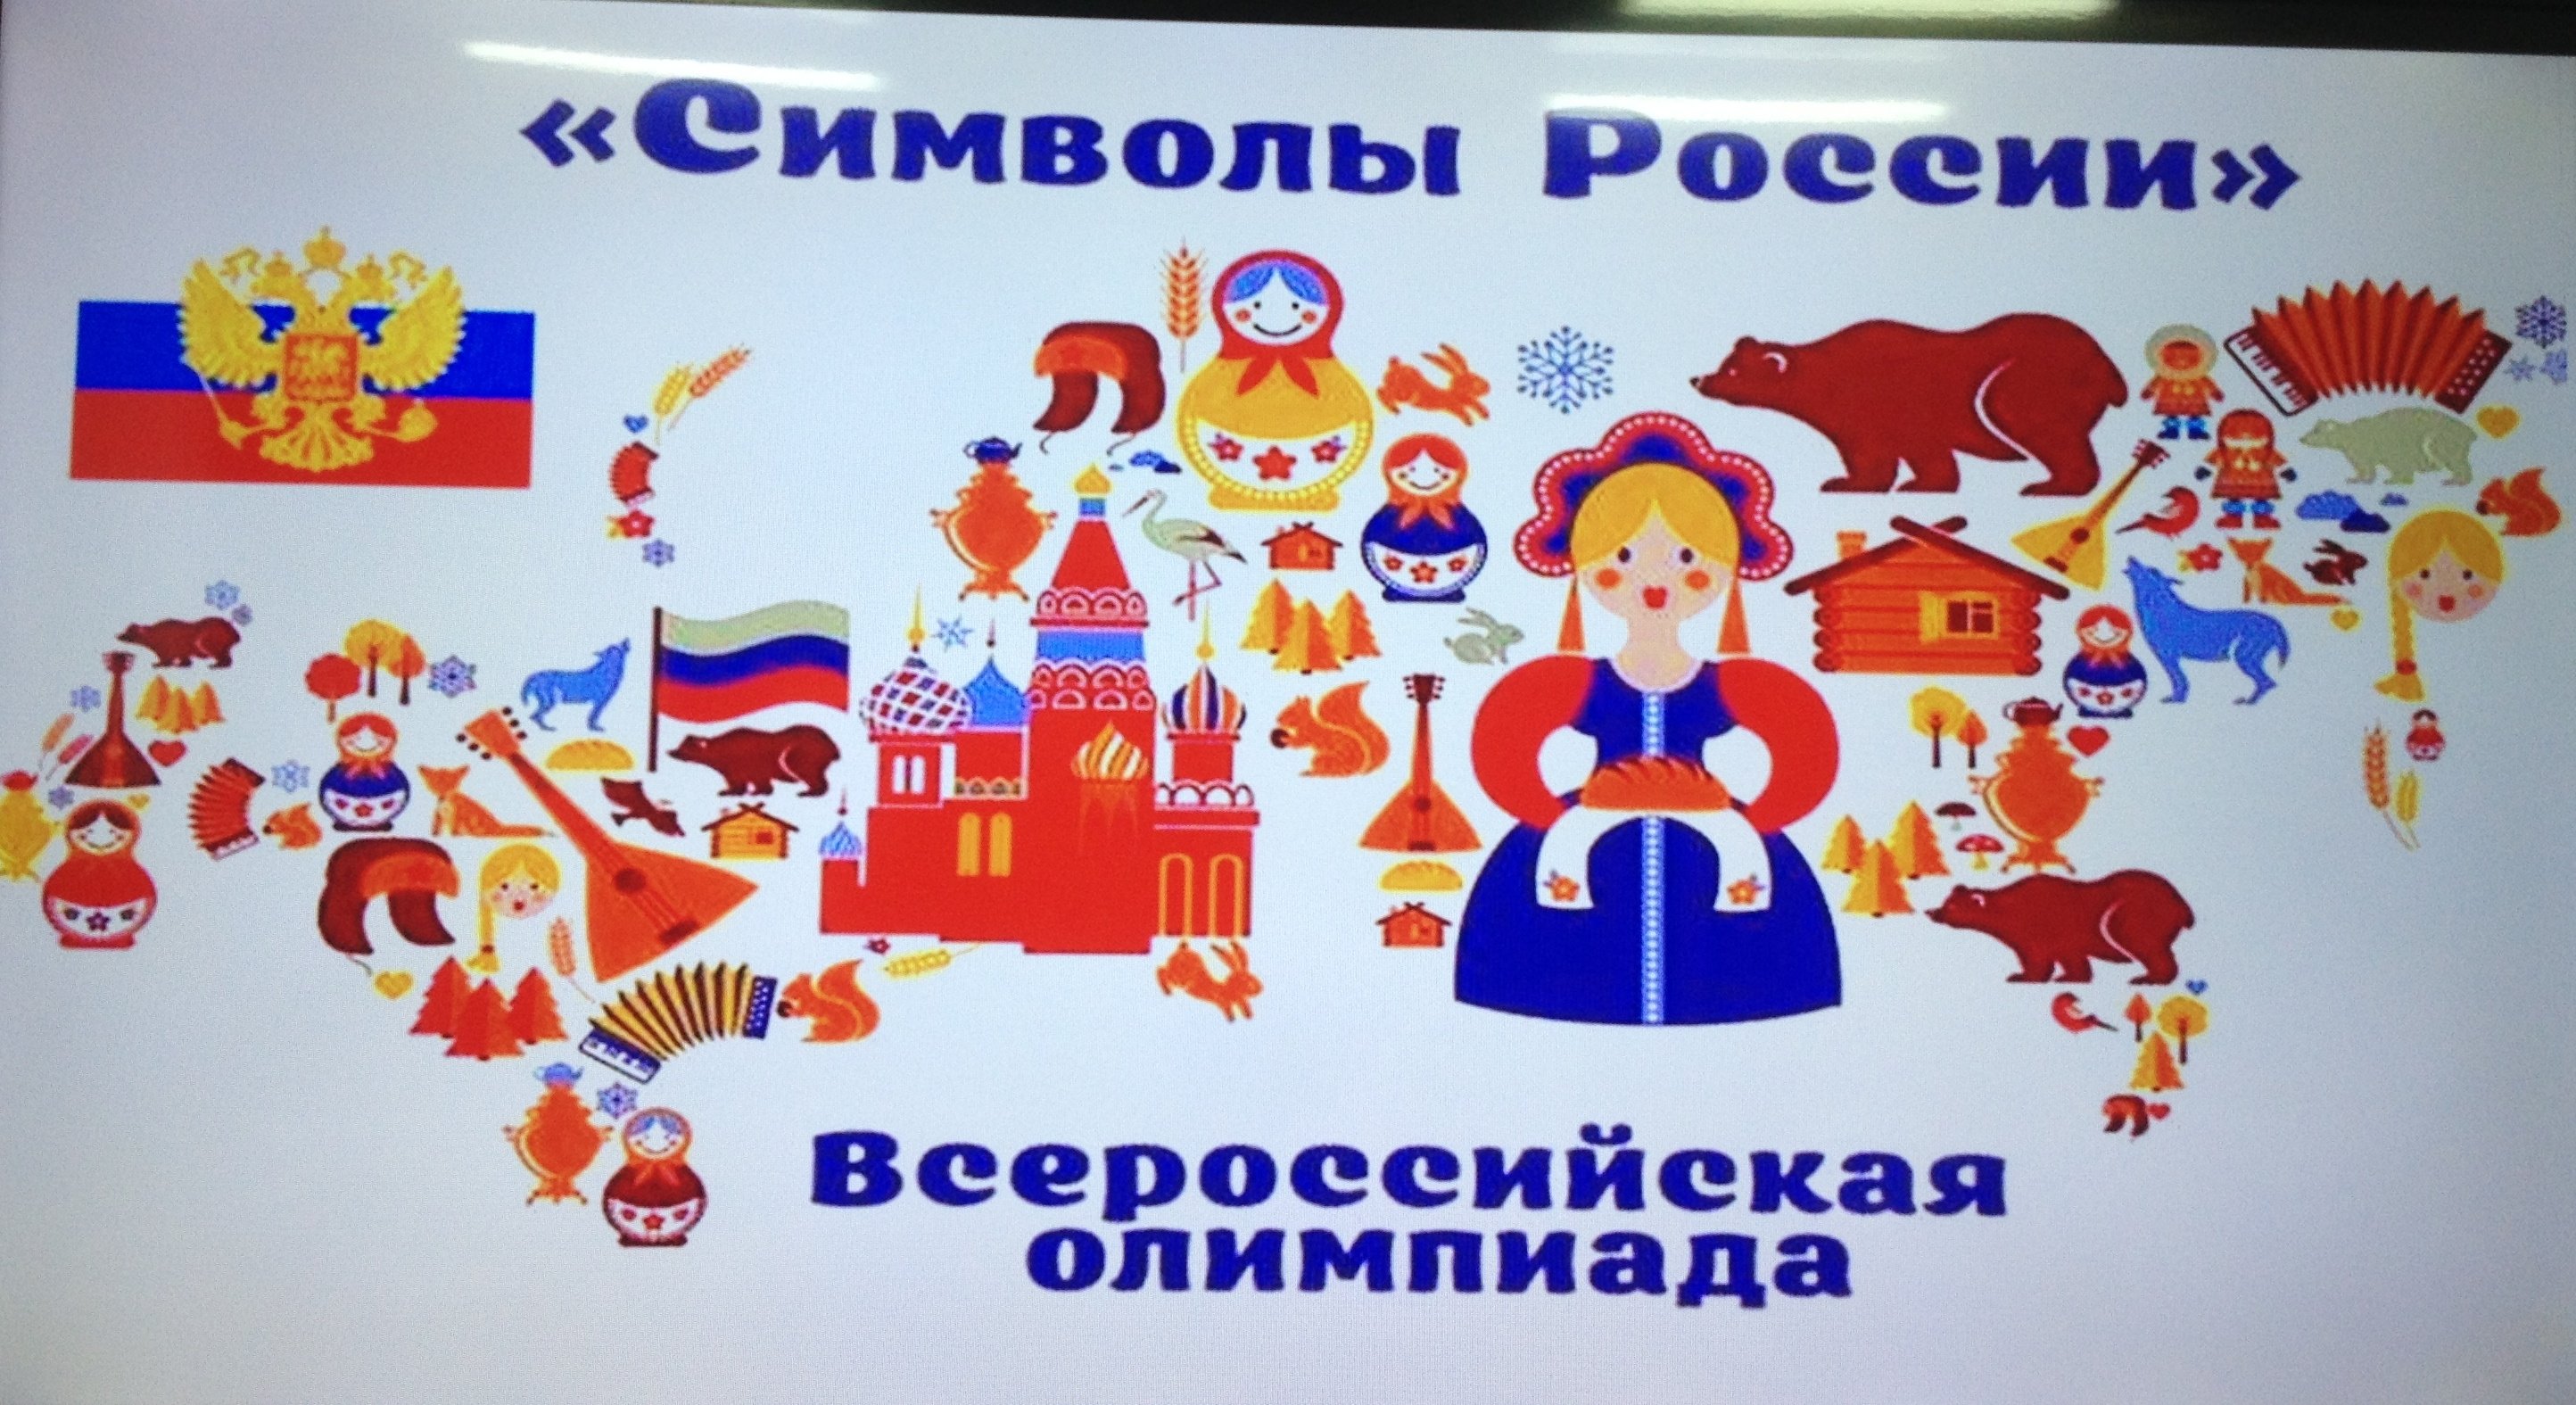 Литературные символы россии